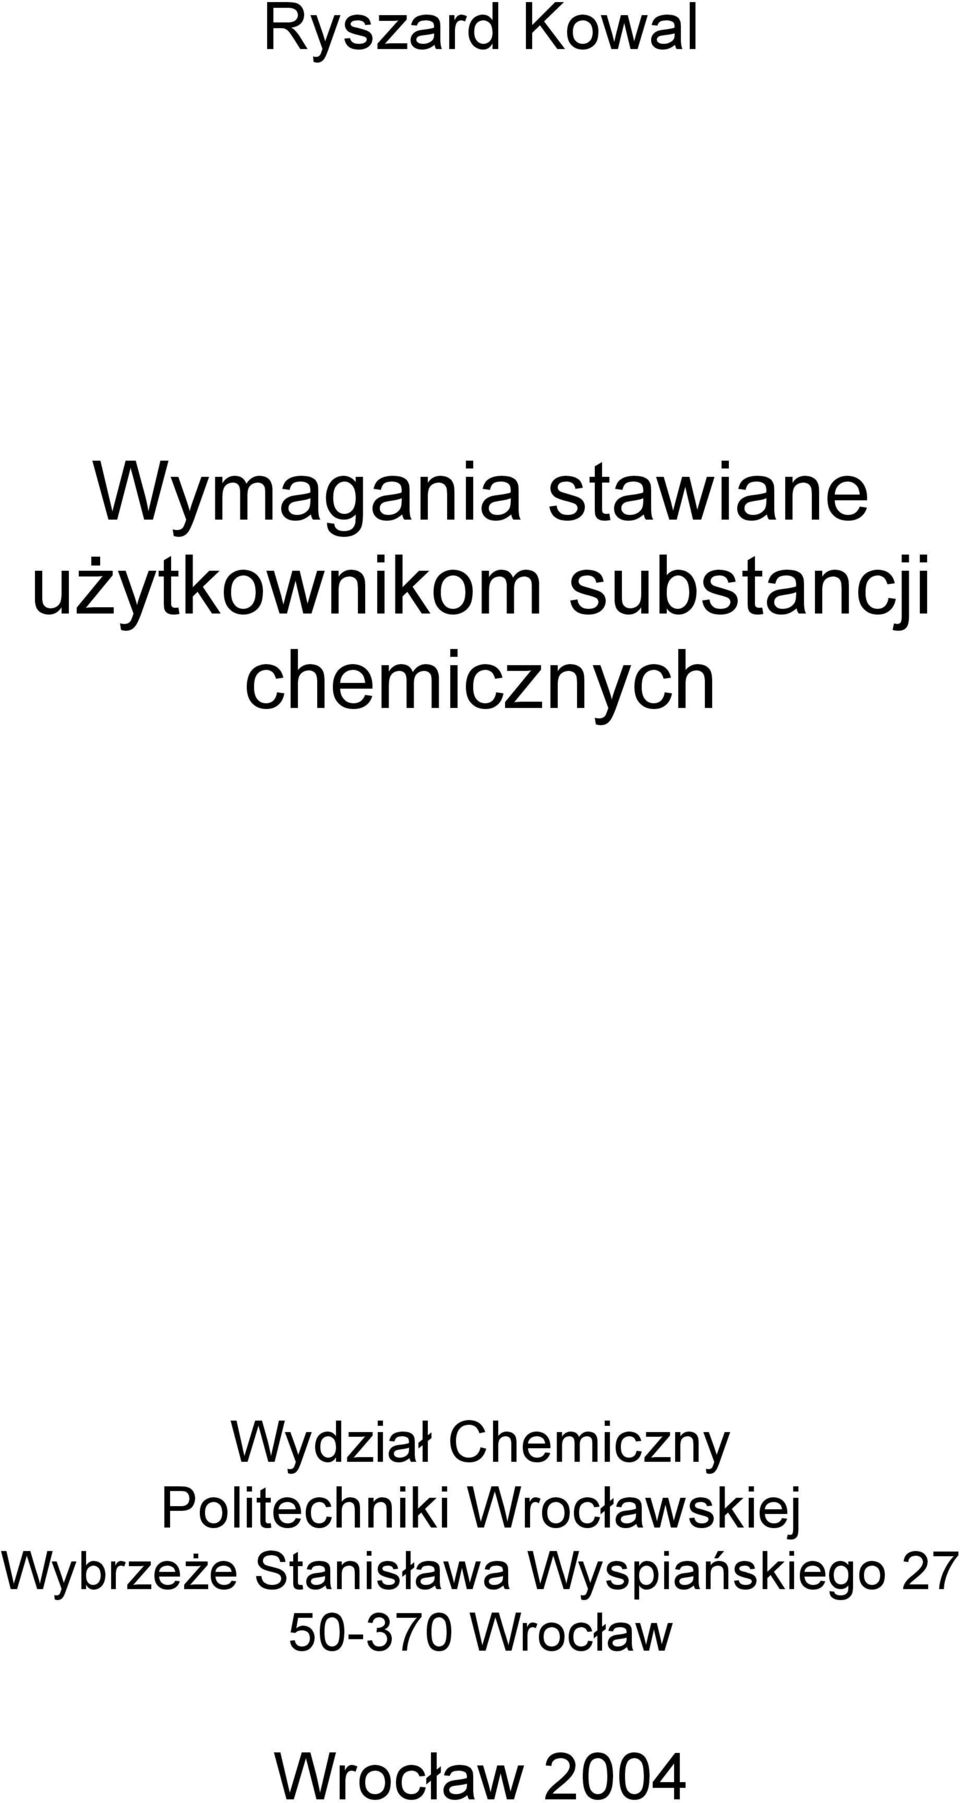 Chemiczny Politechniki Wrocławskiej Wybrzeże